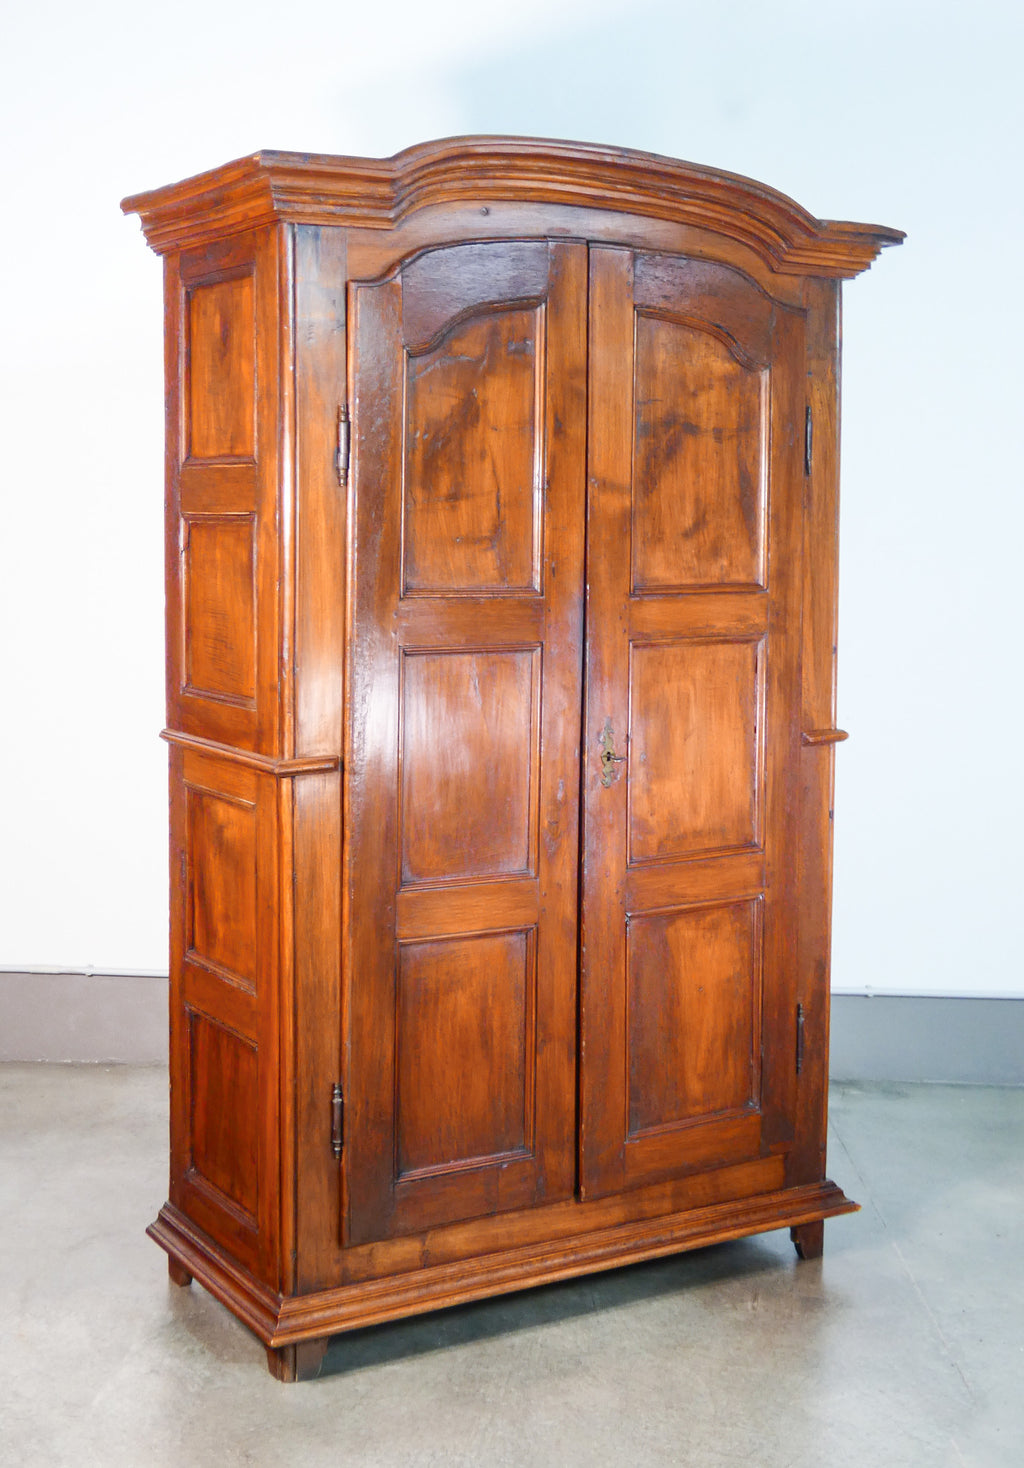 armadio carlo x legno massello noce epoca 1800 guardaroba doppio corpo antico